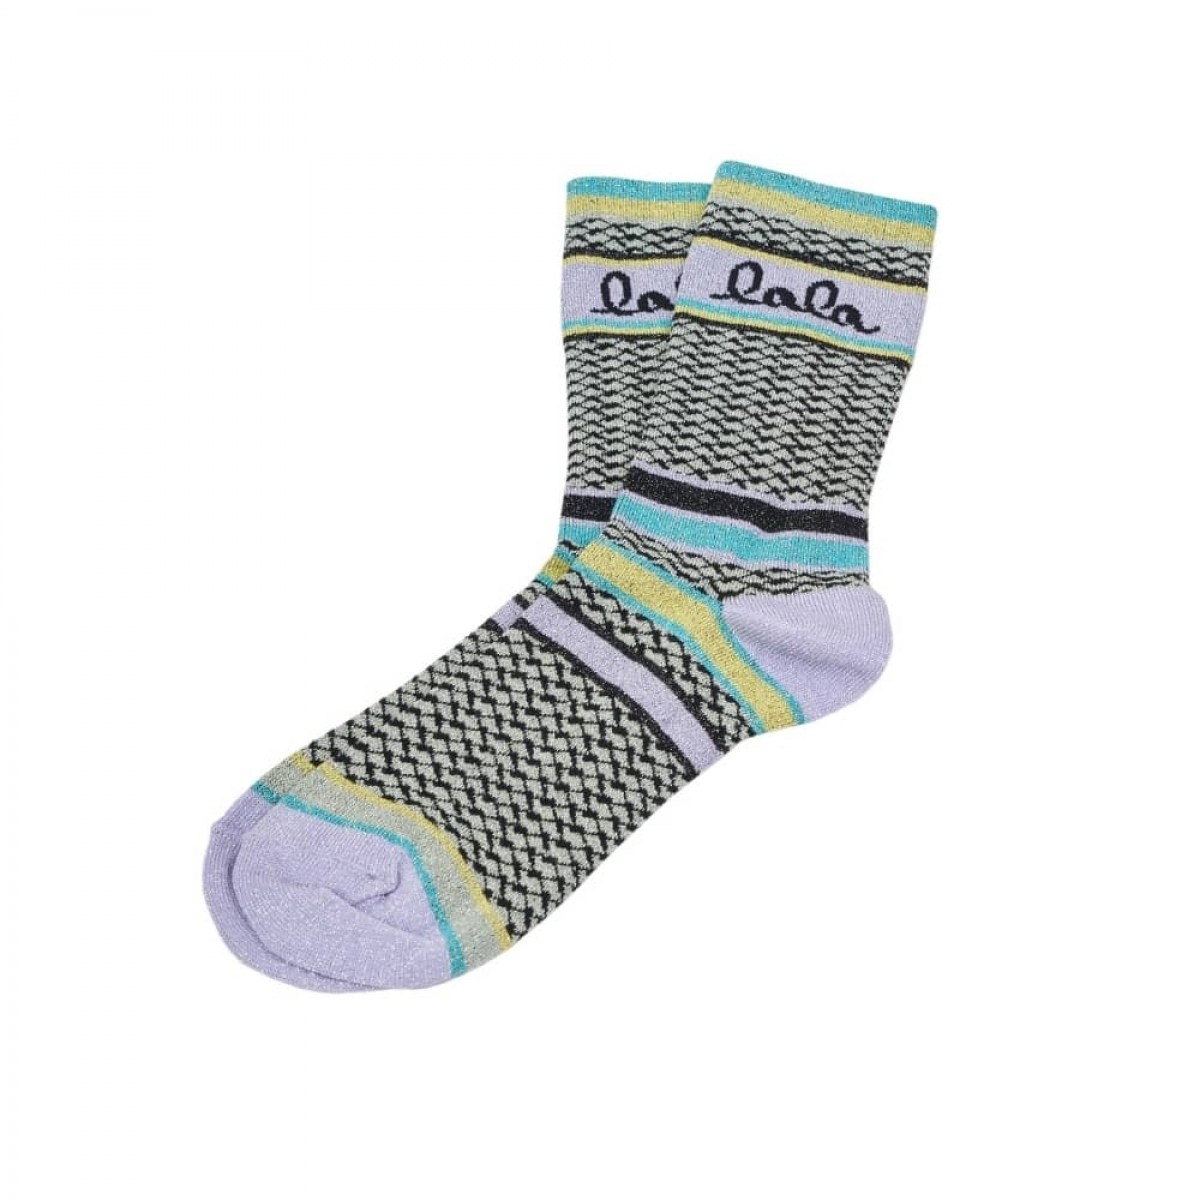 silja socks - stripes lavender - front